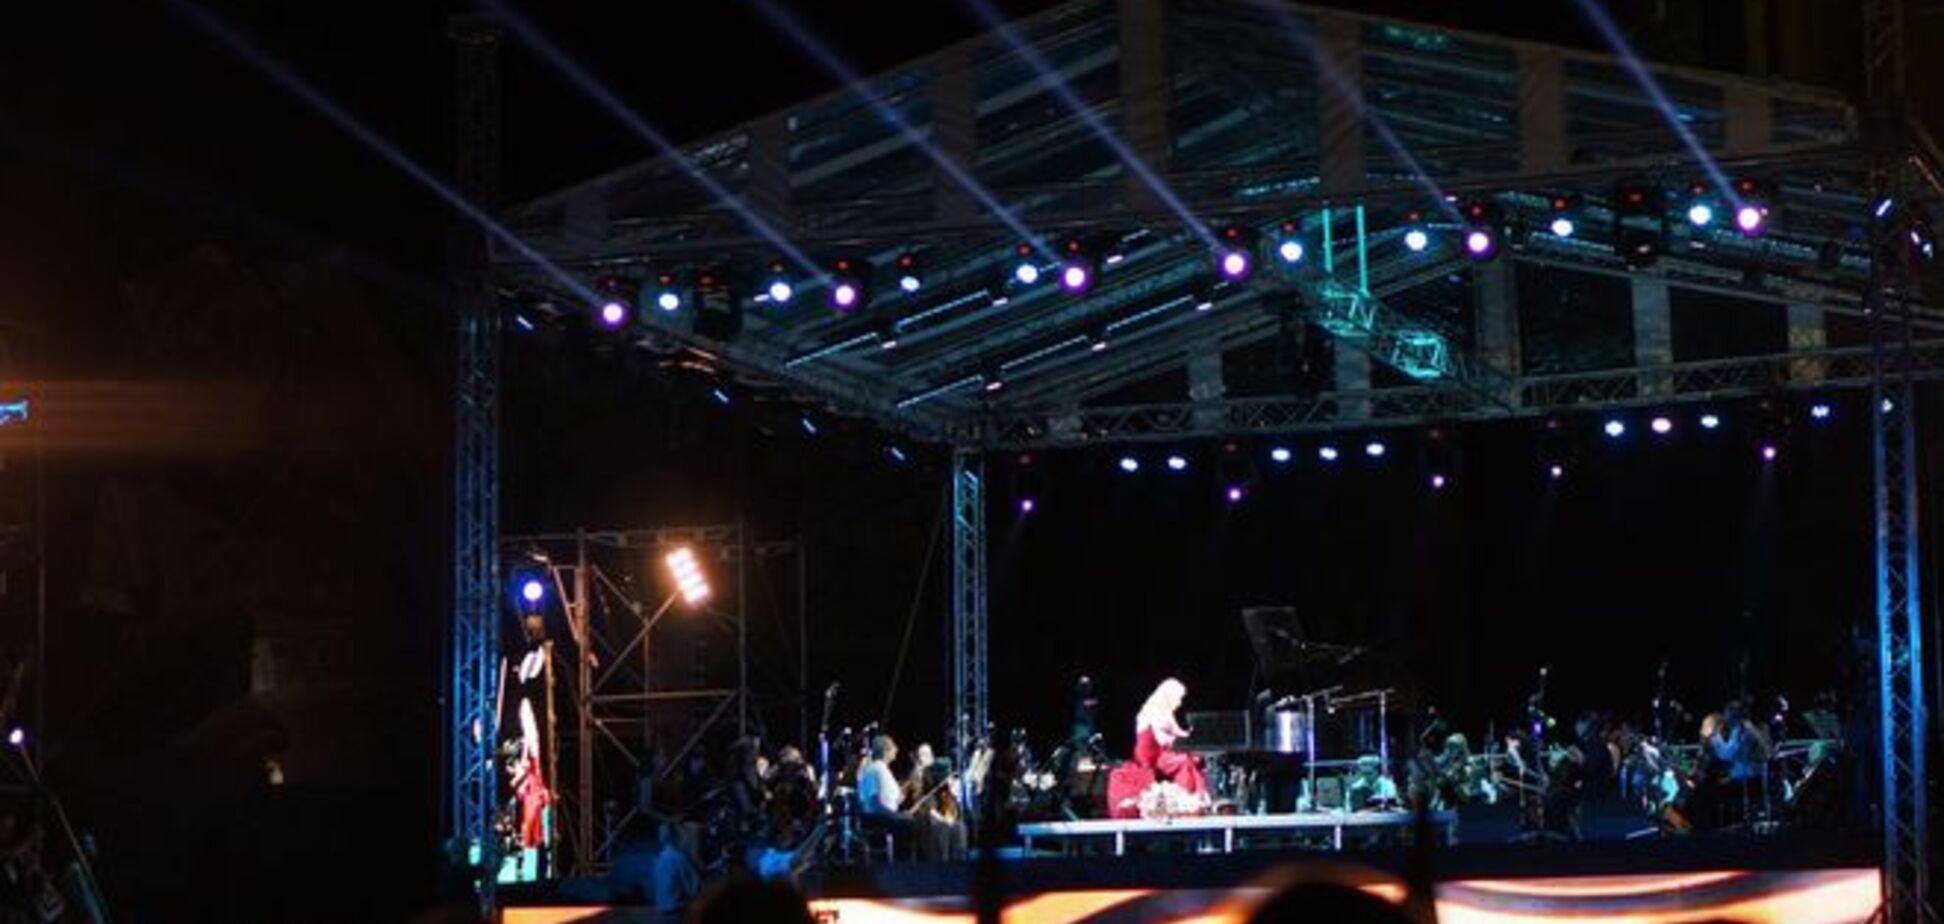 Знаменита американська піаністка дала концерт в окупованому терористами Донецьку